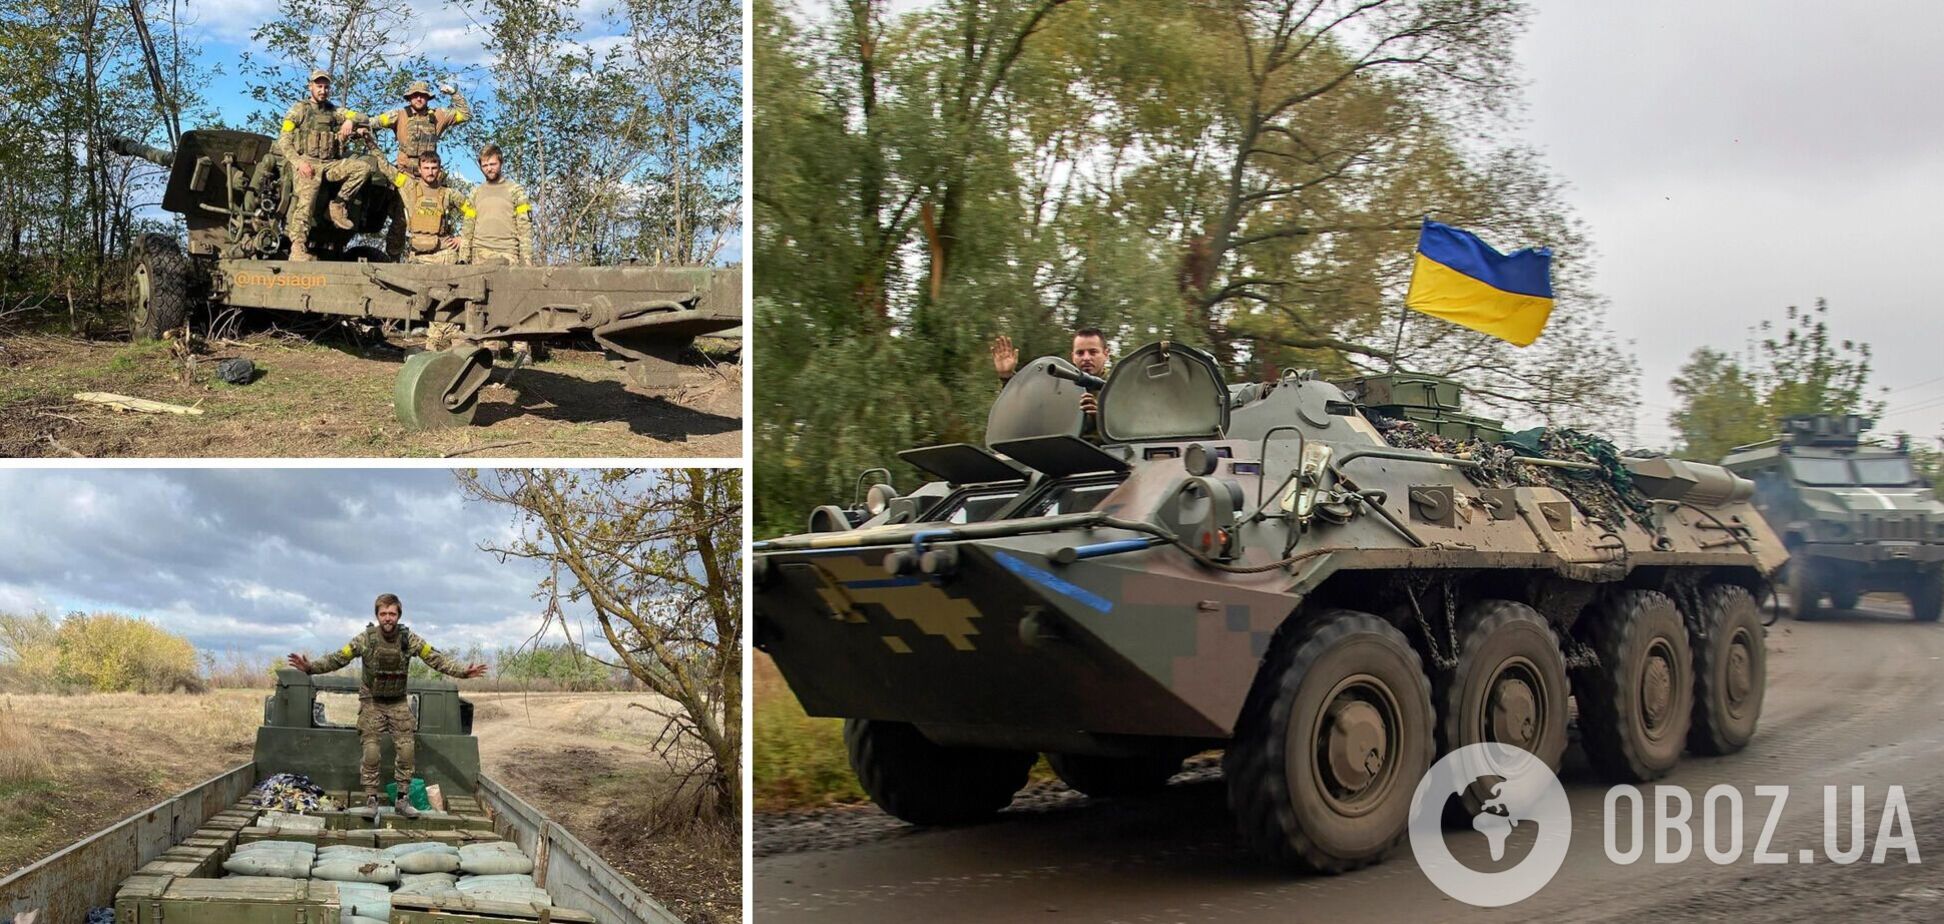 Бойцы ВСУ затрофеили вражескую гаубицу 2А65 'Мста-Б' и целый грузовик снарядов к ней. Фото